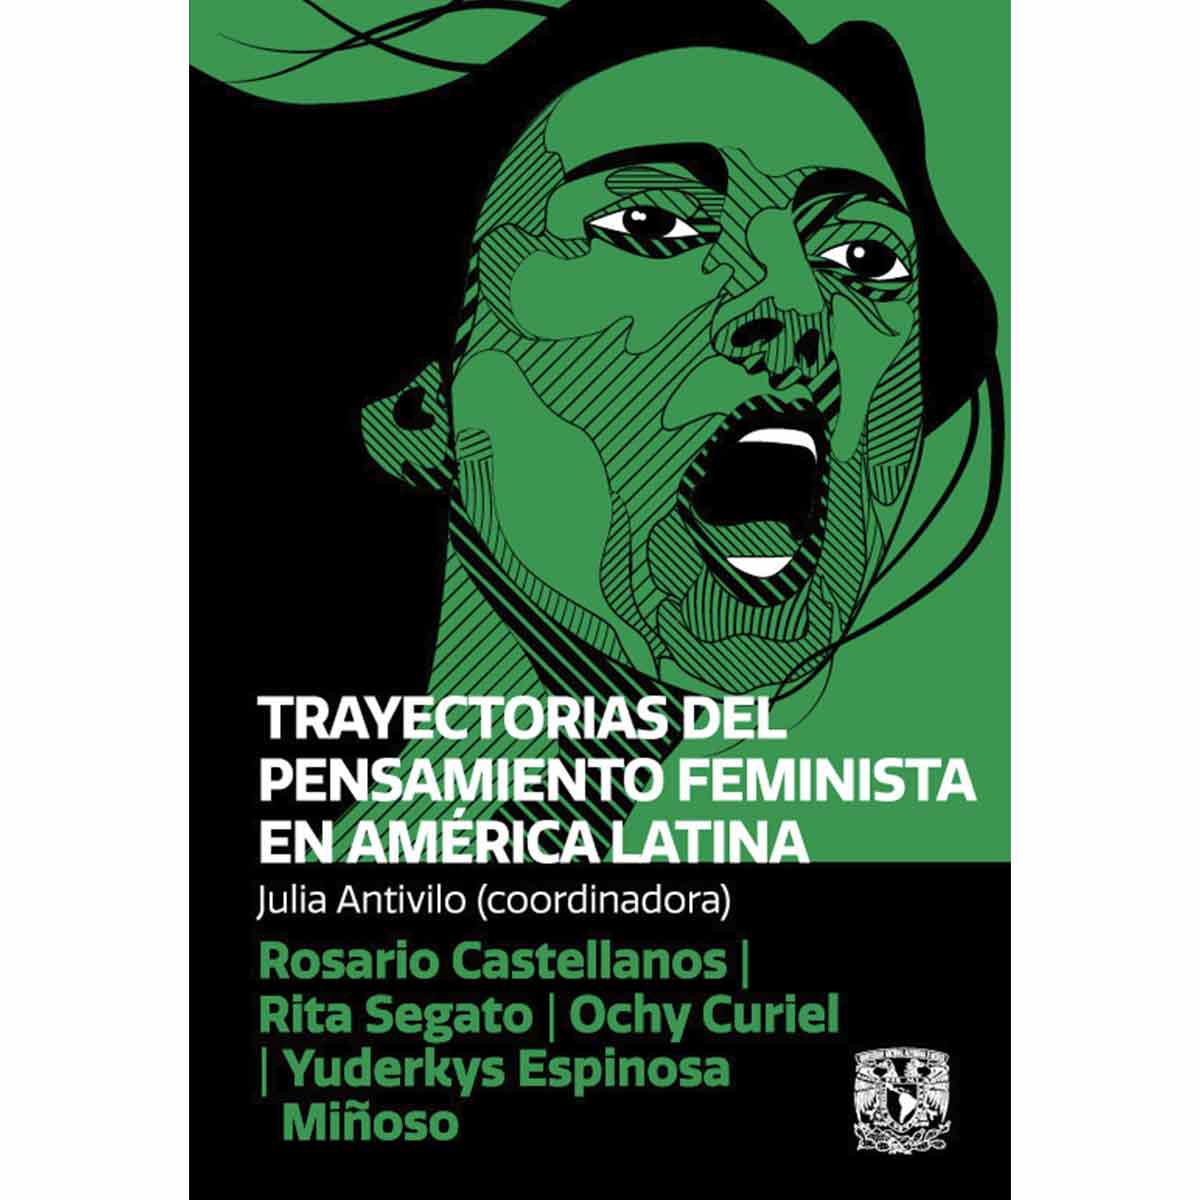 TRAYECTORIAS DEL PENSAMIENTO FEMINISTA EN AMÉRICA LATINA